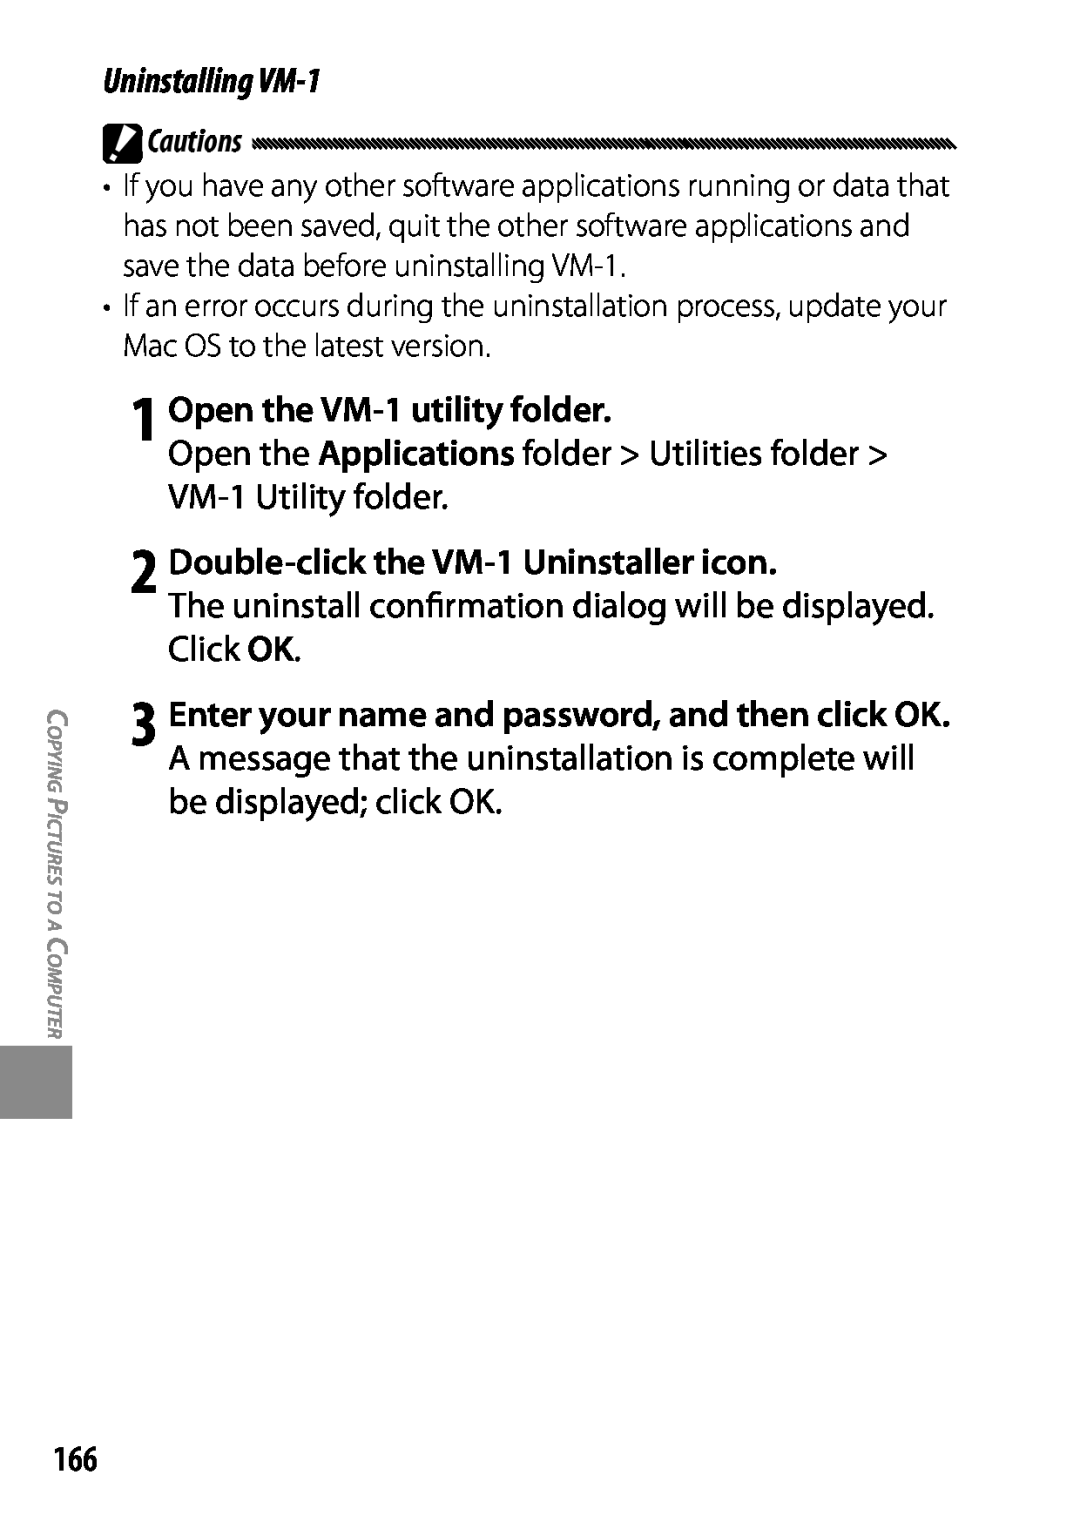 Ricoh 170543, GXR, 170553 manual 1 Open the VM-1 utility folder, Double-click the VM-1 Uninstaller icon 